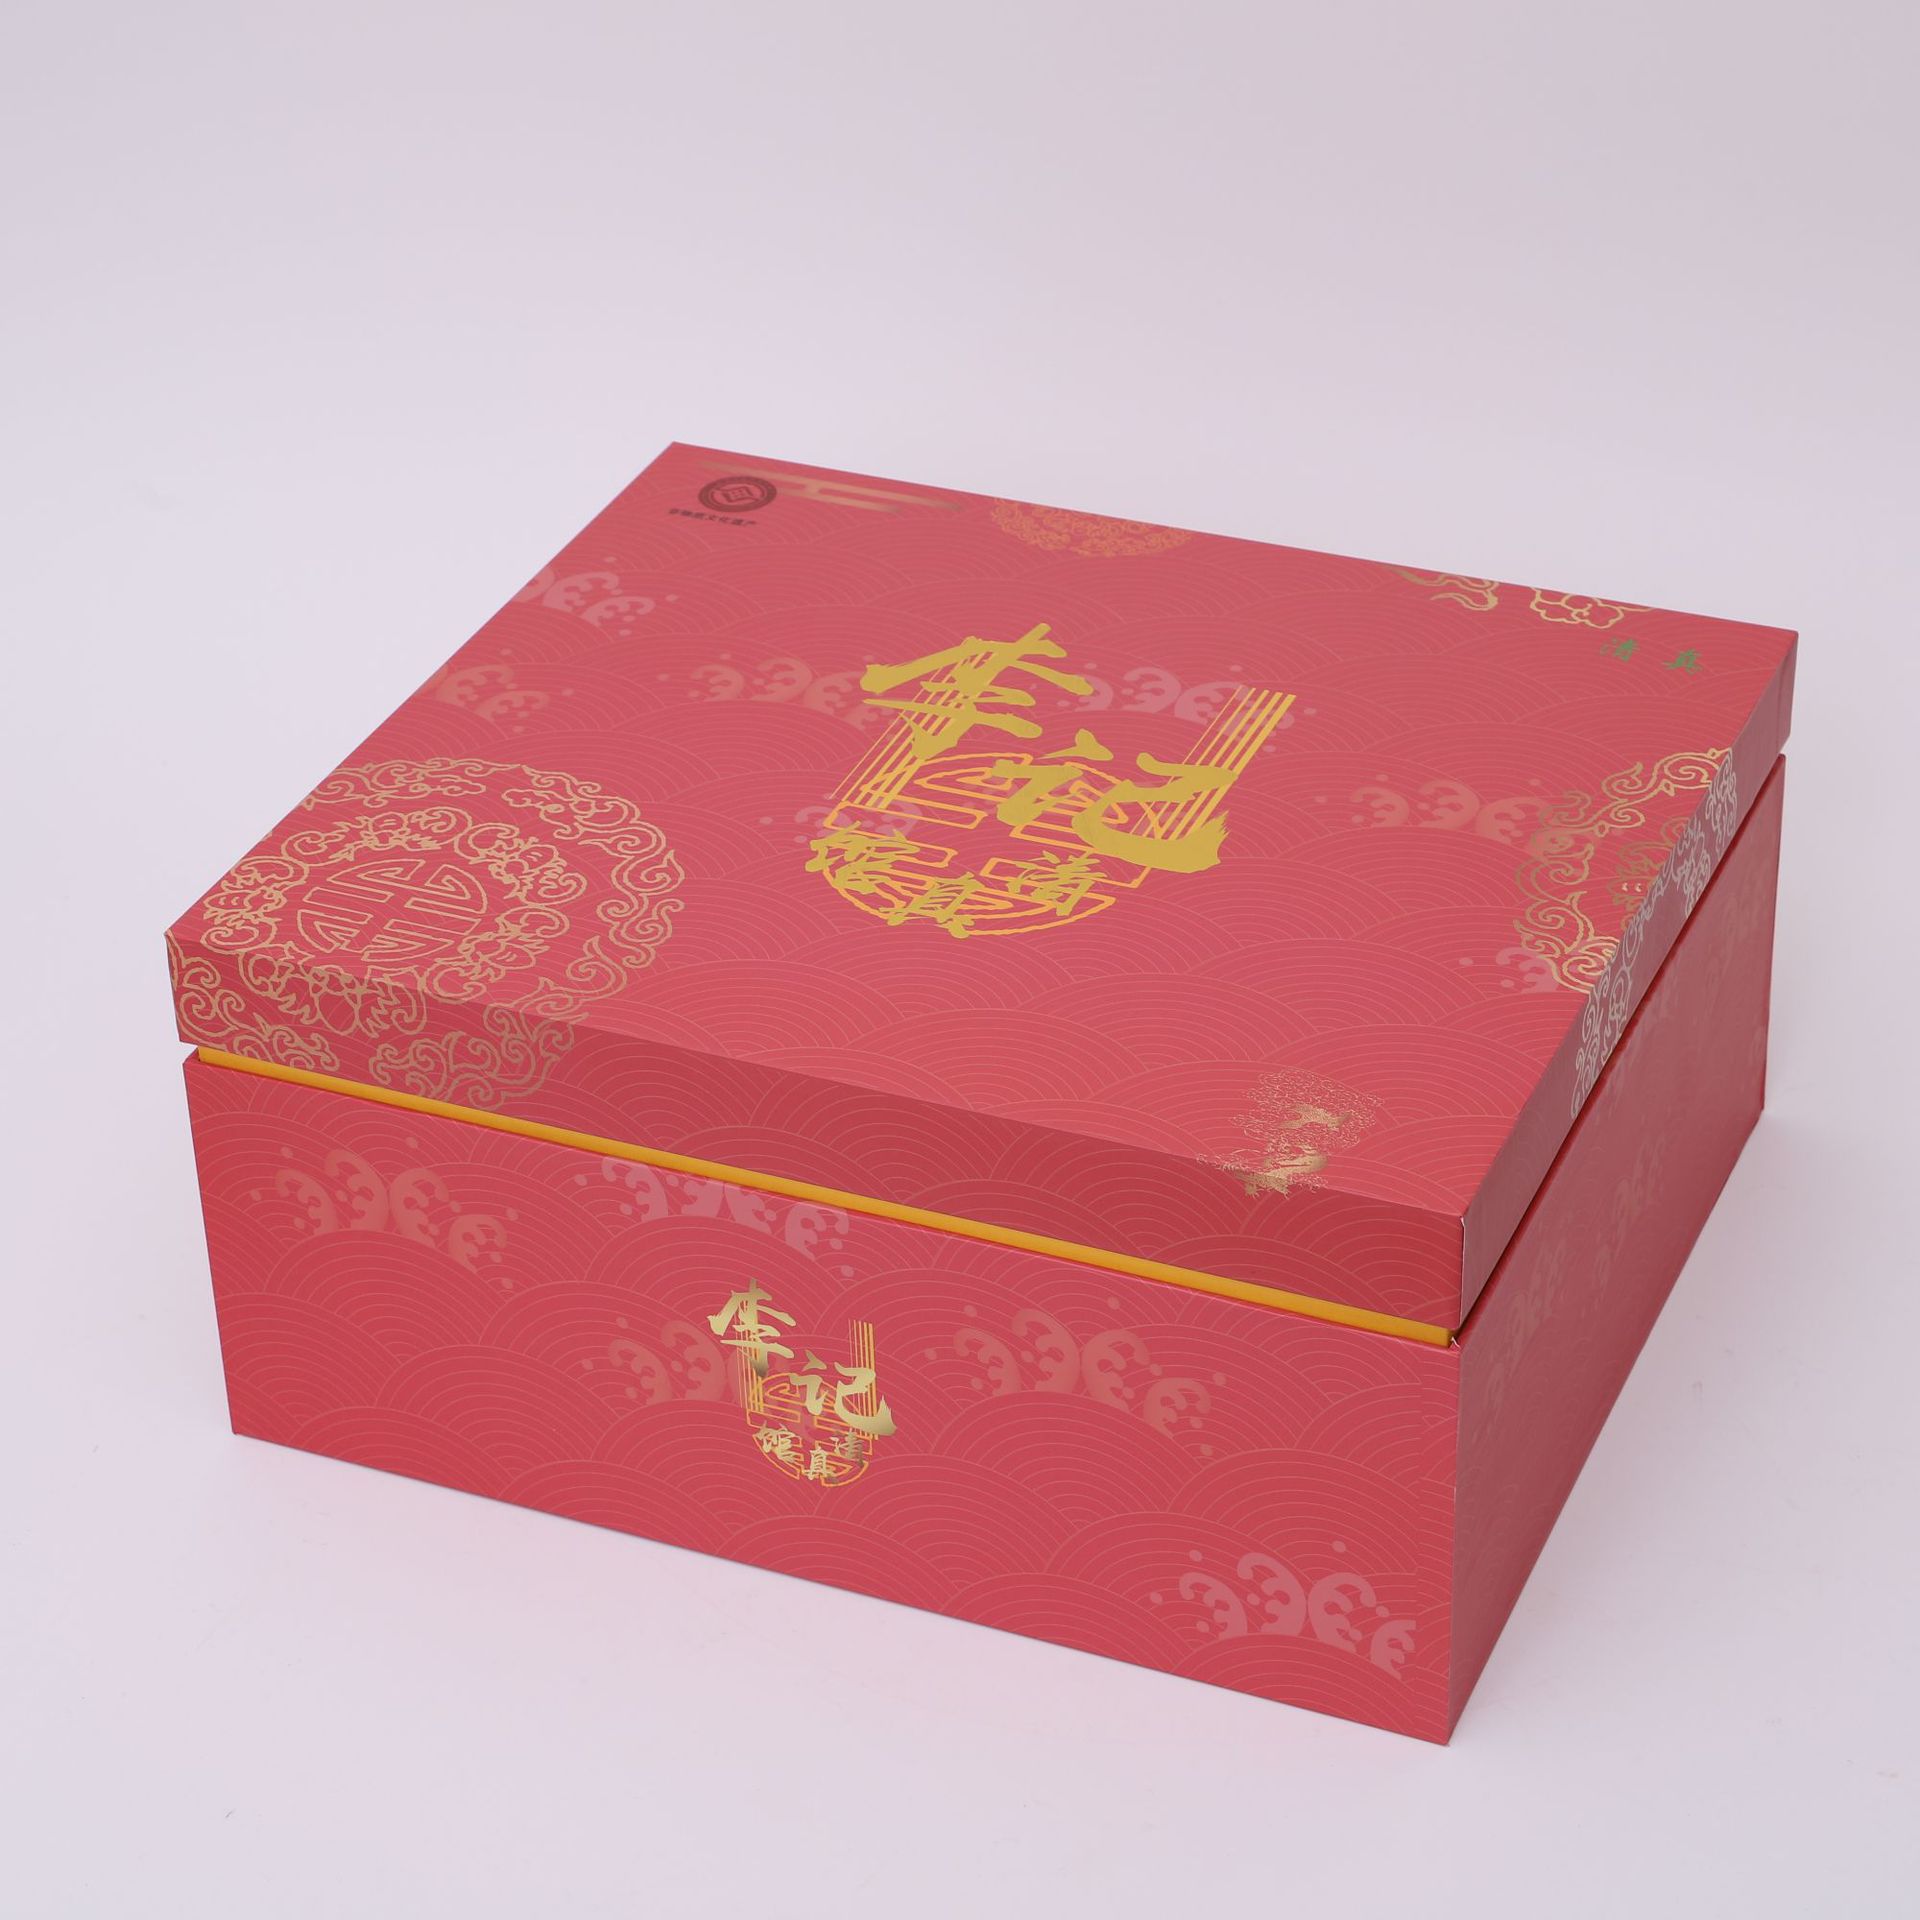 盒包装包装印刷|泉州盒子包装印刷福州茶叶盒包装印刷漳州不干胶印刷厂福州